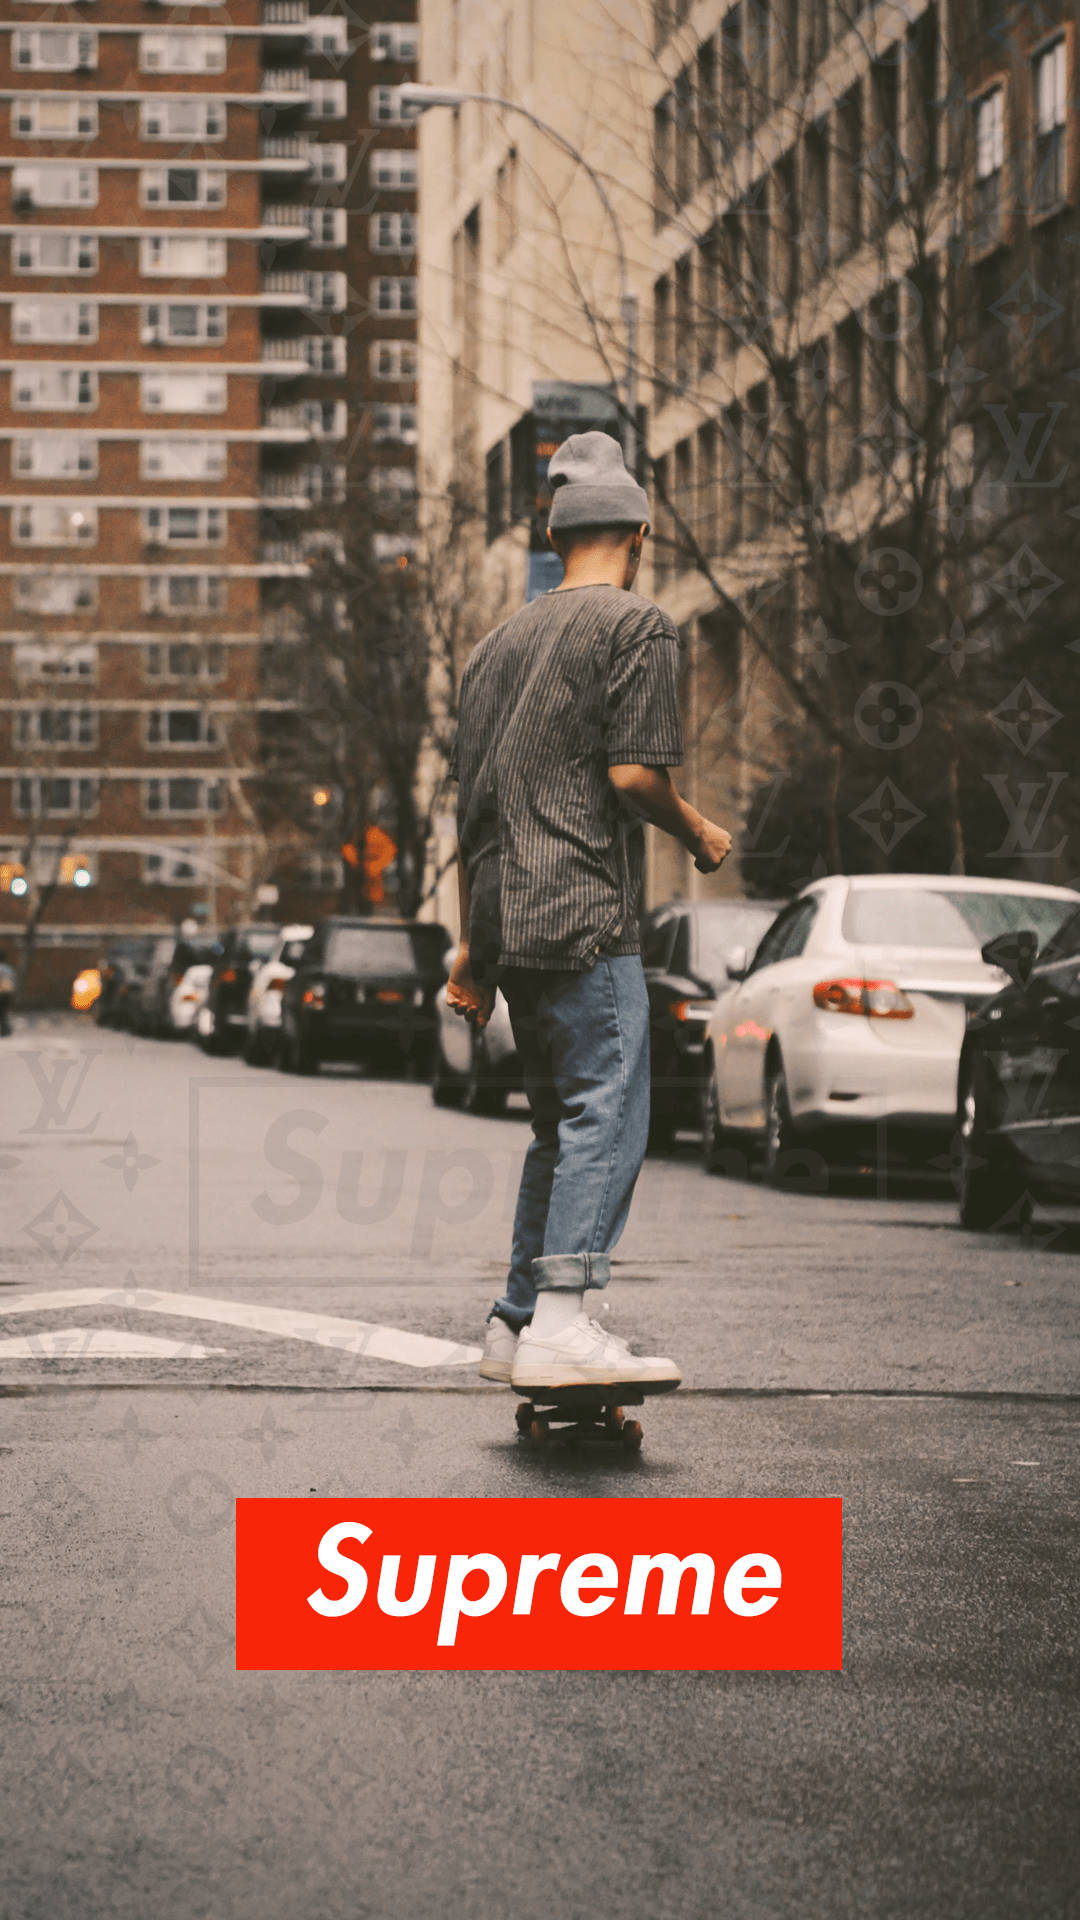 Übermenschauf Skateboard Mit Supreme-logo Wallpaper